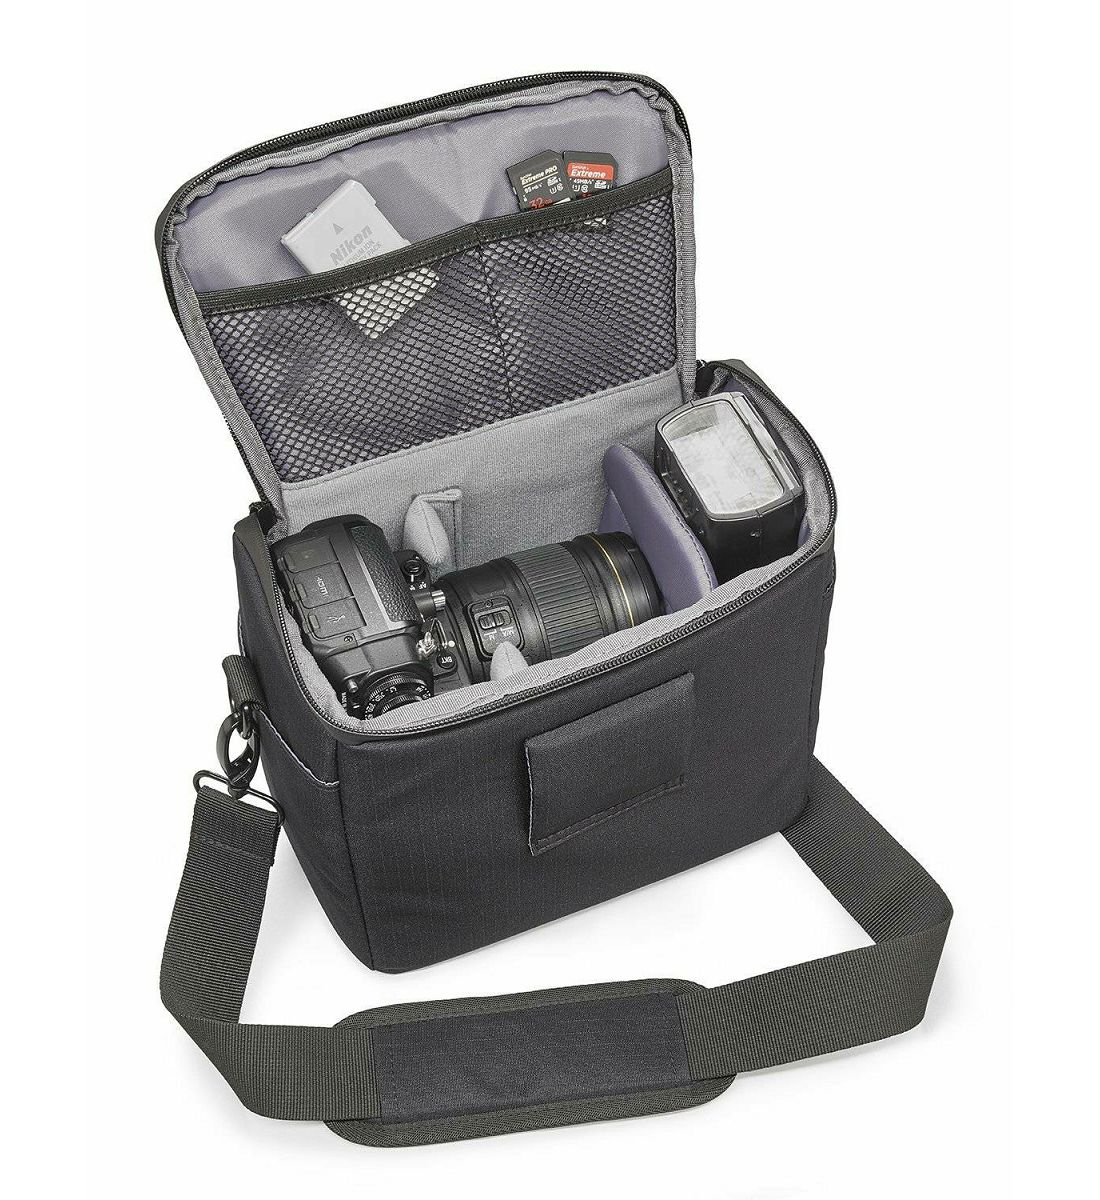 Cullmann Malaga Maxima 120 Black crna torba za DSLR fotoaparat i foto opremu 200x160x120mm 355g (90380)